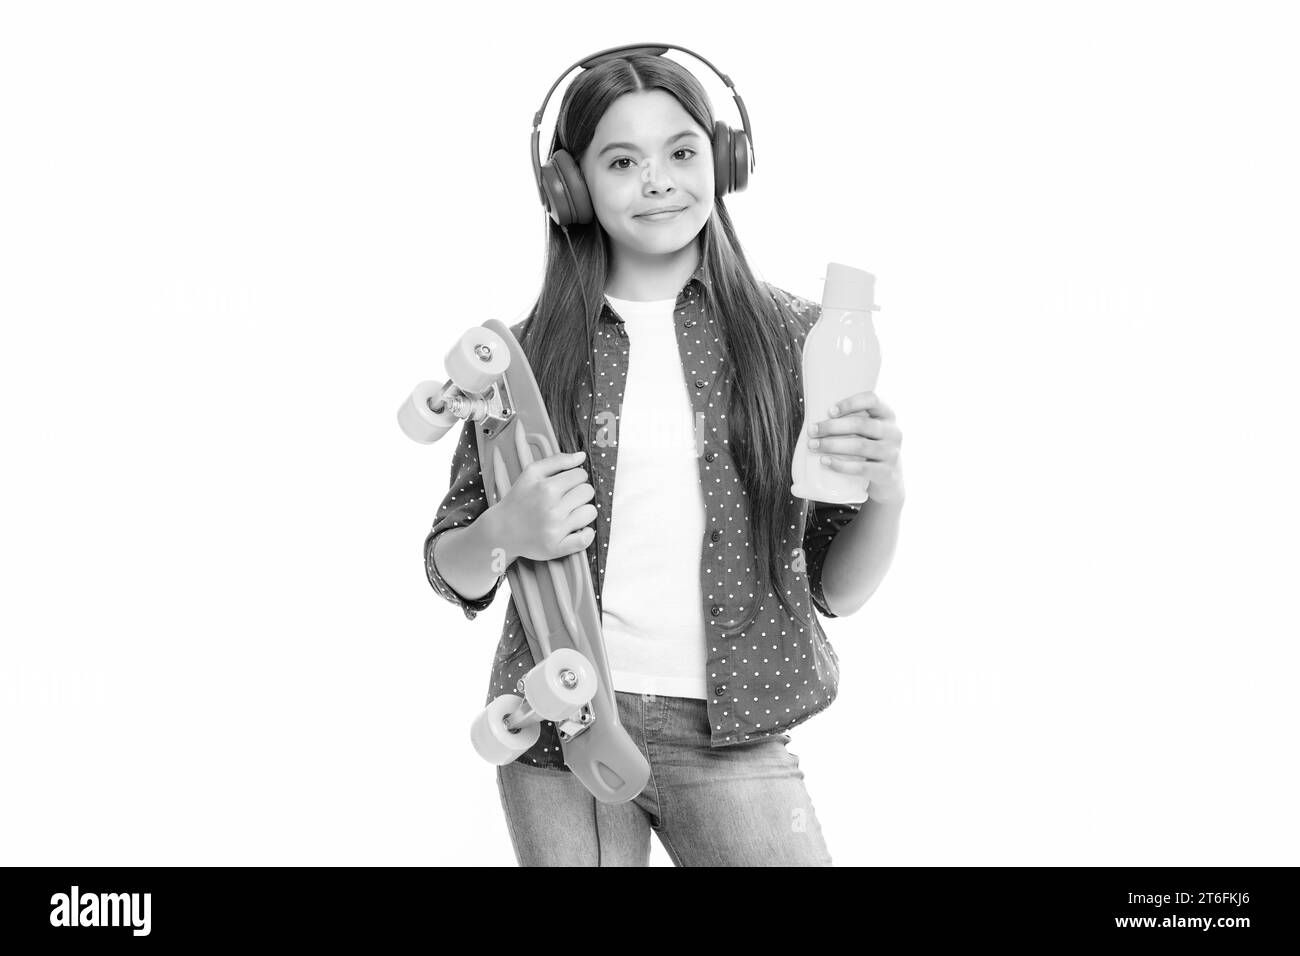 Belle et mode jeune fille de l'adolescence posant avec le skateboard et le casque. Mode de vie de rue adolescent Banque D'Images